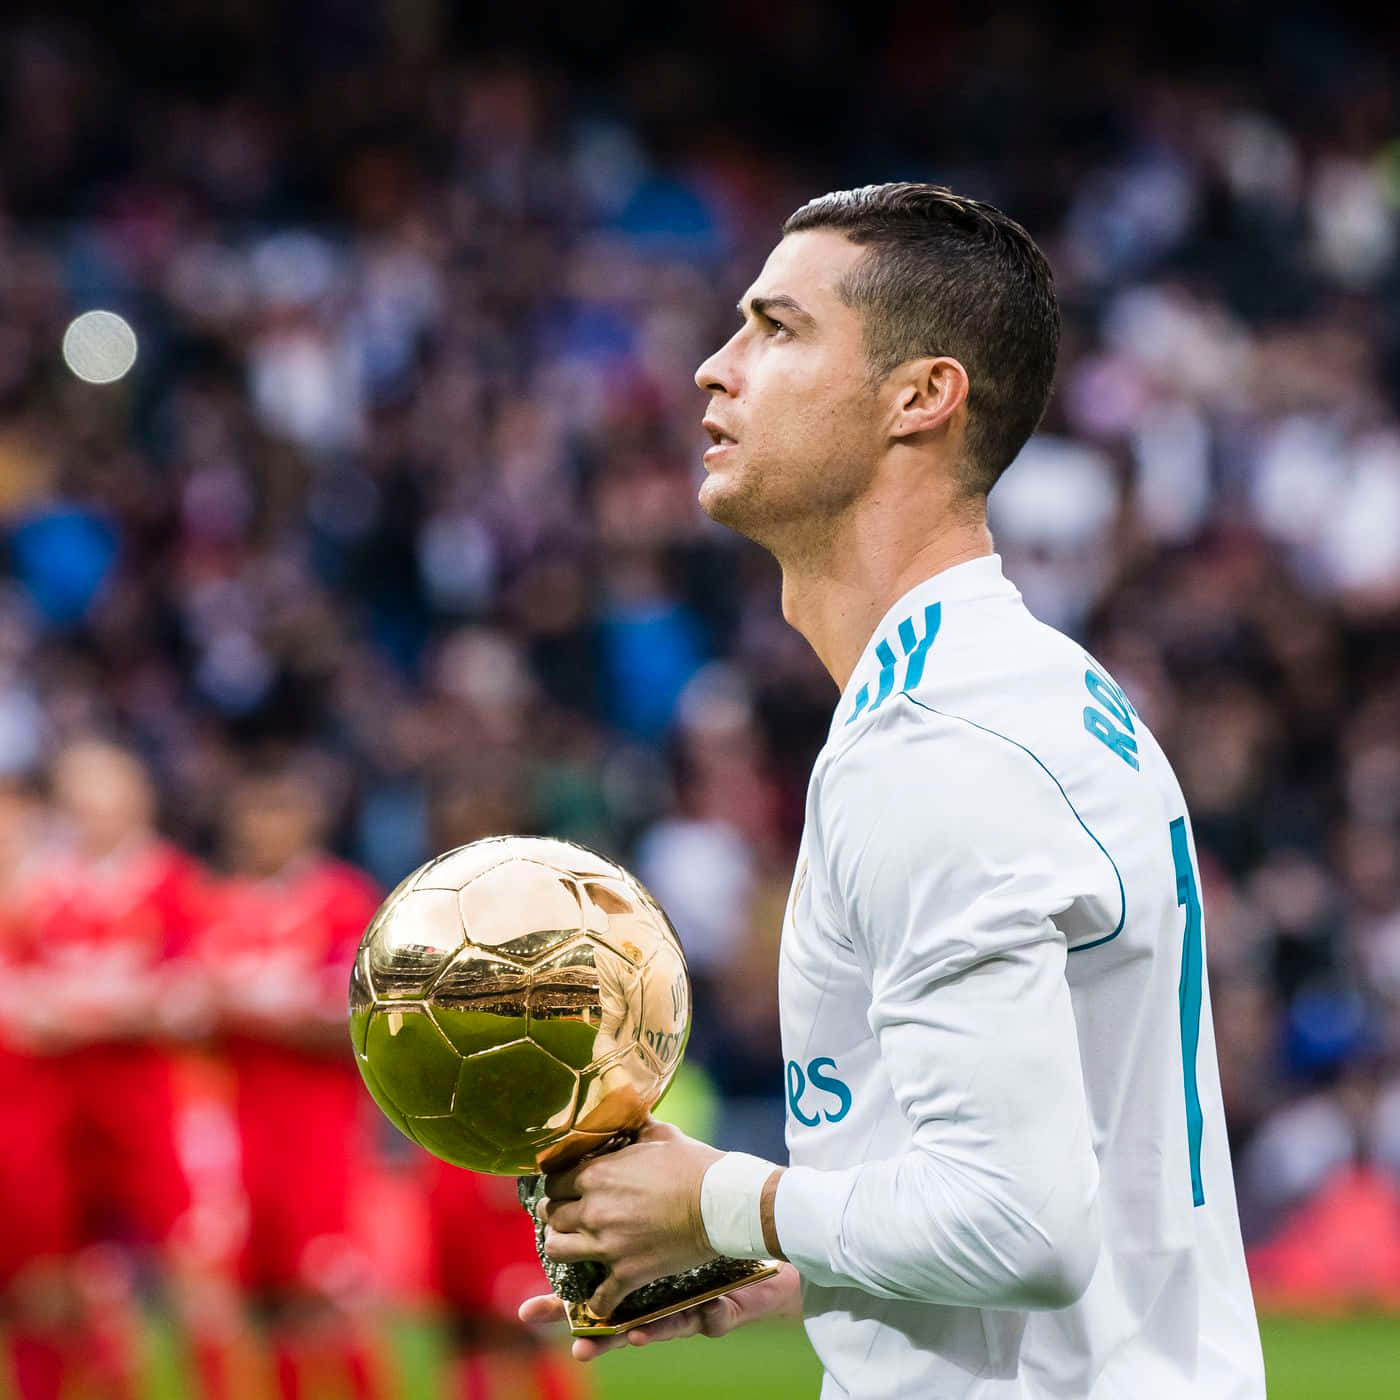 Cristiano Ronaldo taking the game winning shot.